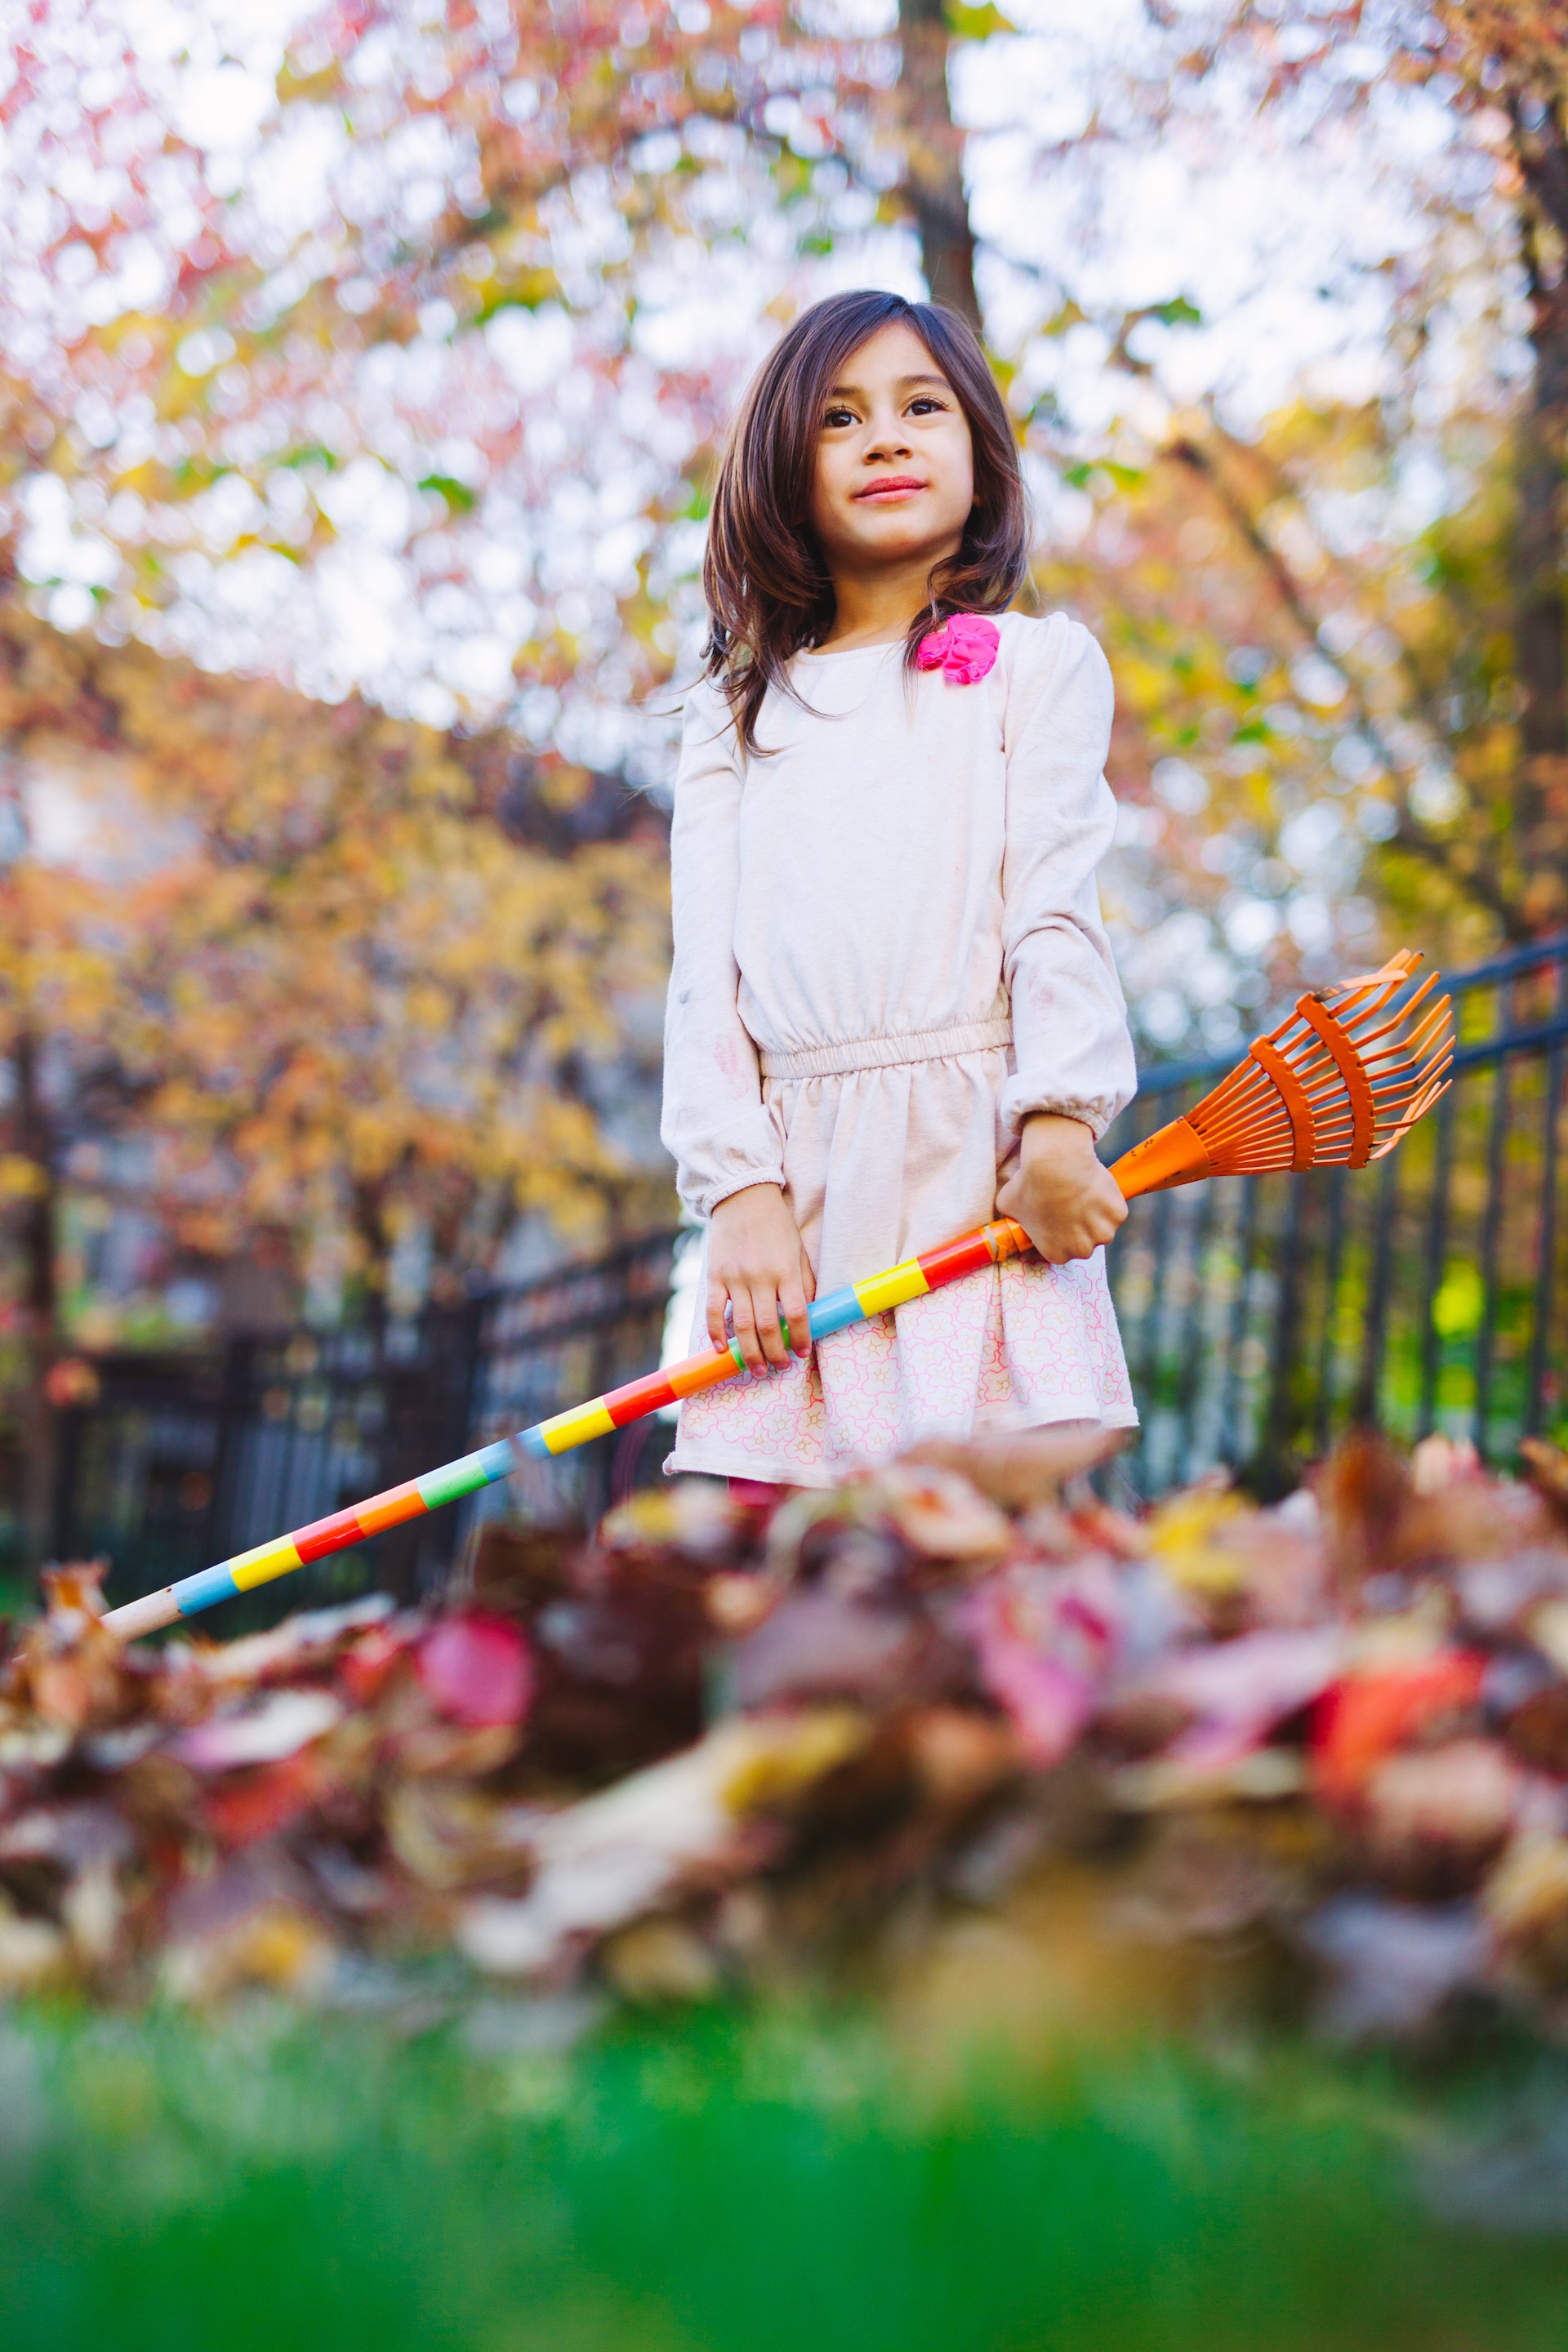 Herbstlicher Garten mit Kind - ©Joseph Gonzalez | unsplash